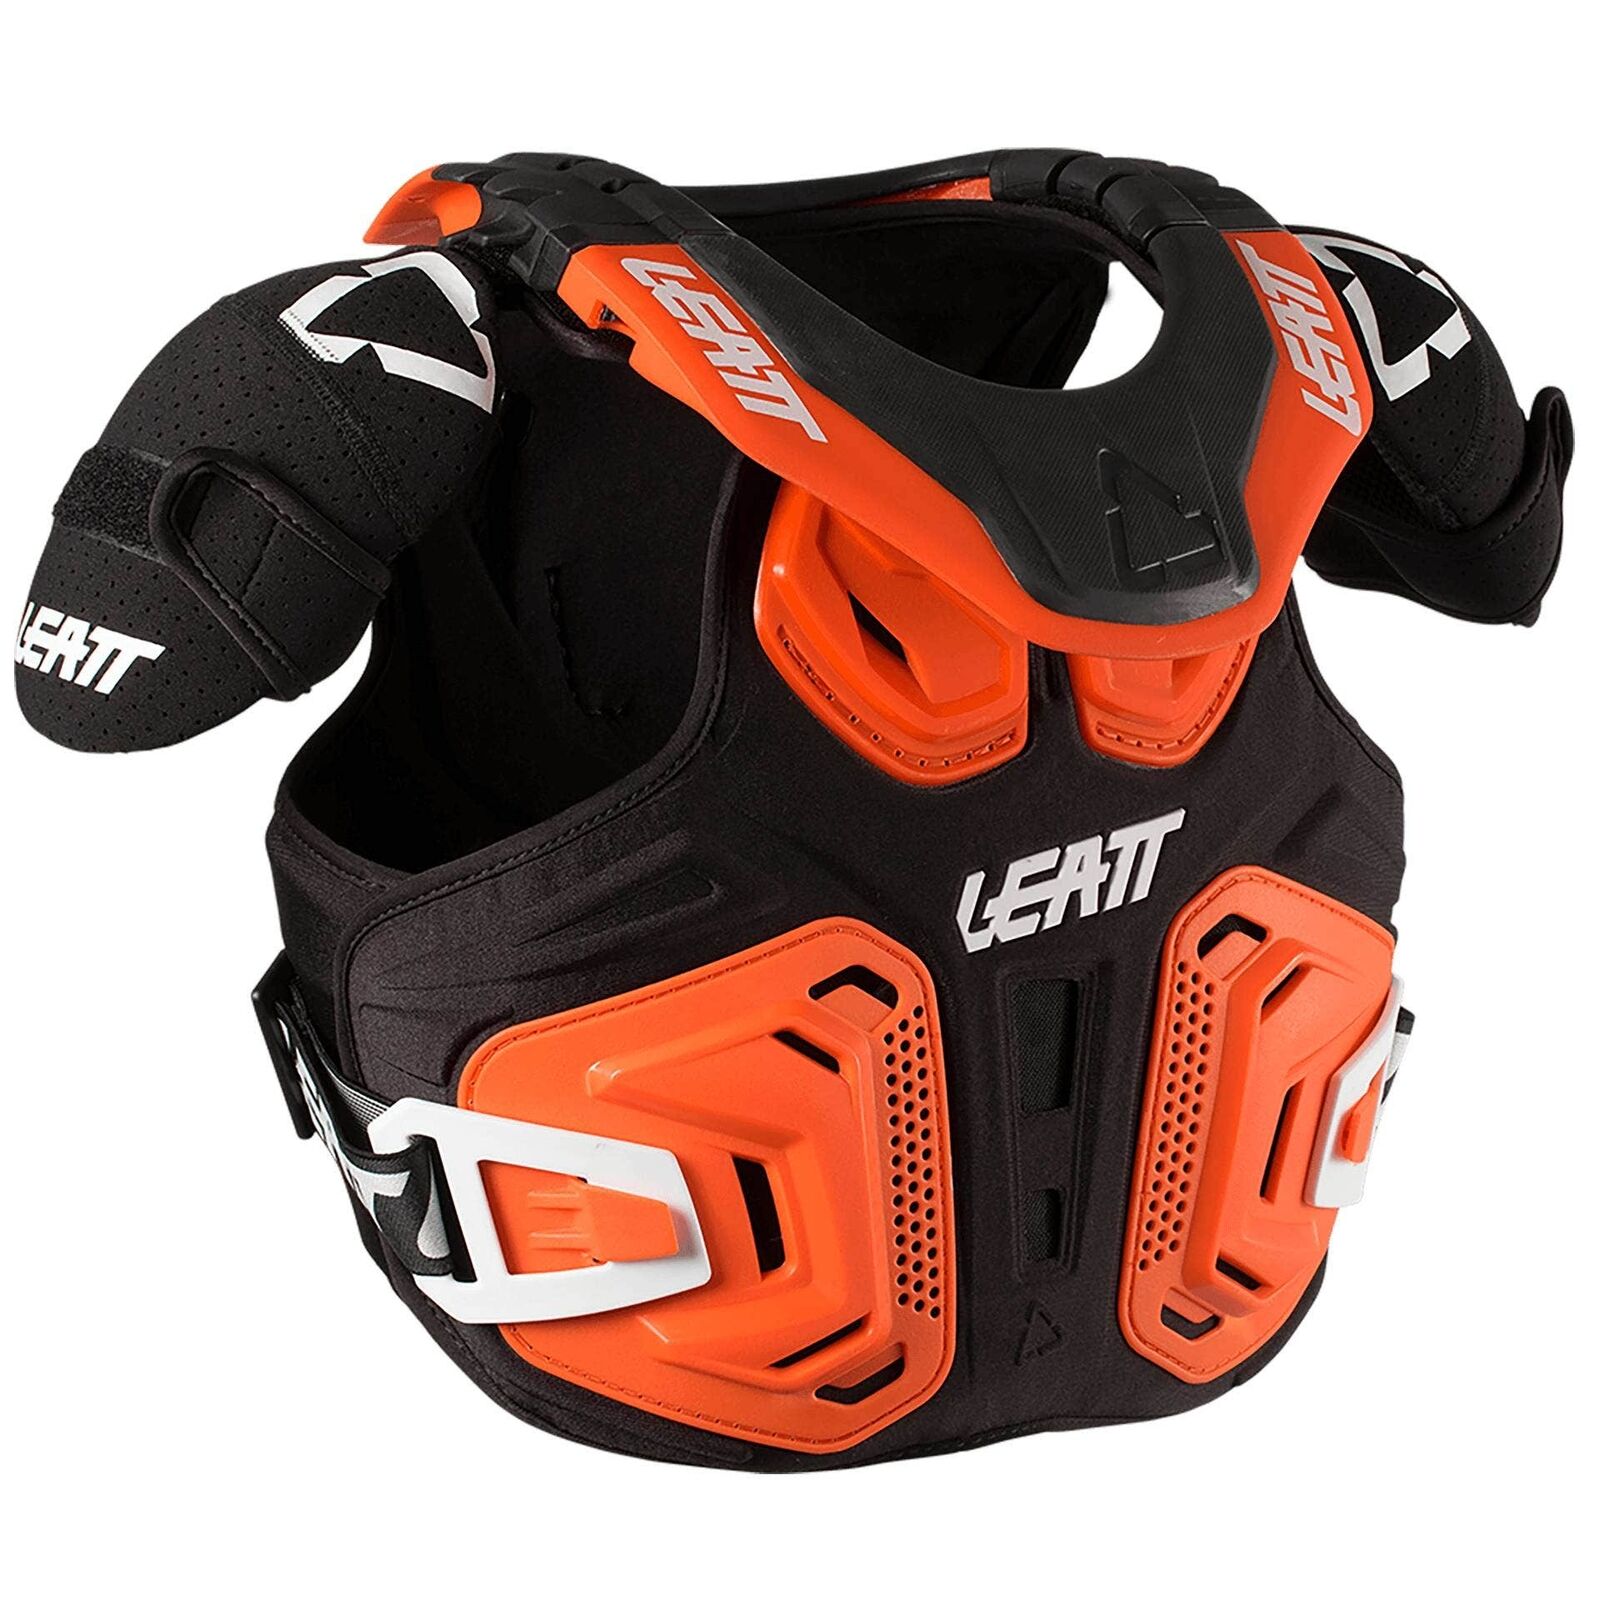 Leatt Fusion Vest 2.0 Jr #S/M 105-125Cm Org 1018010021